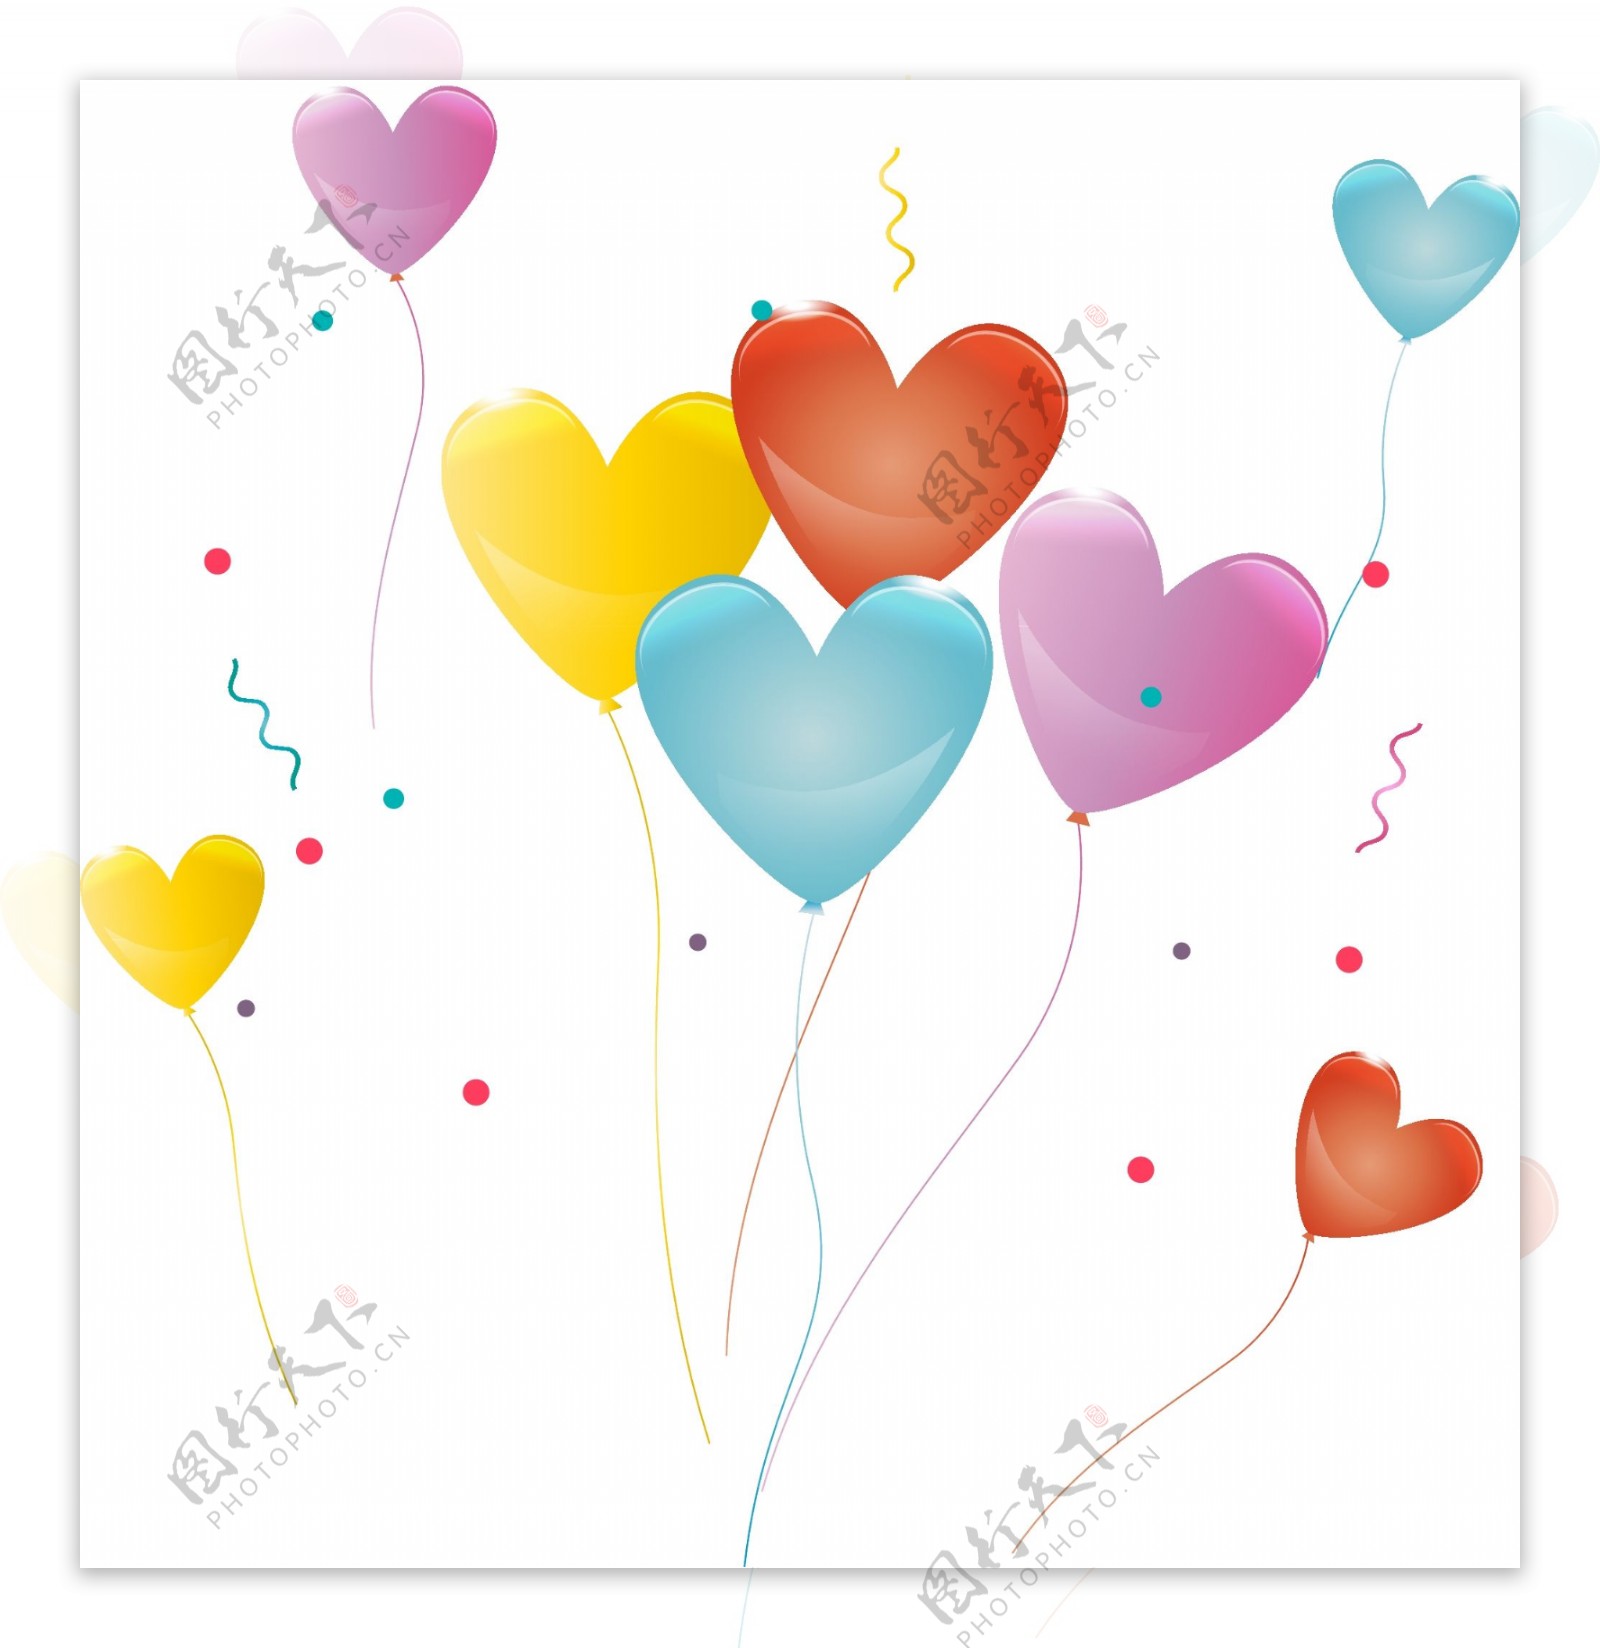 漂浮心形浪漫手绘彩色节日气球生日